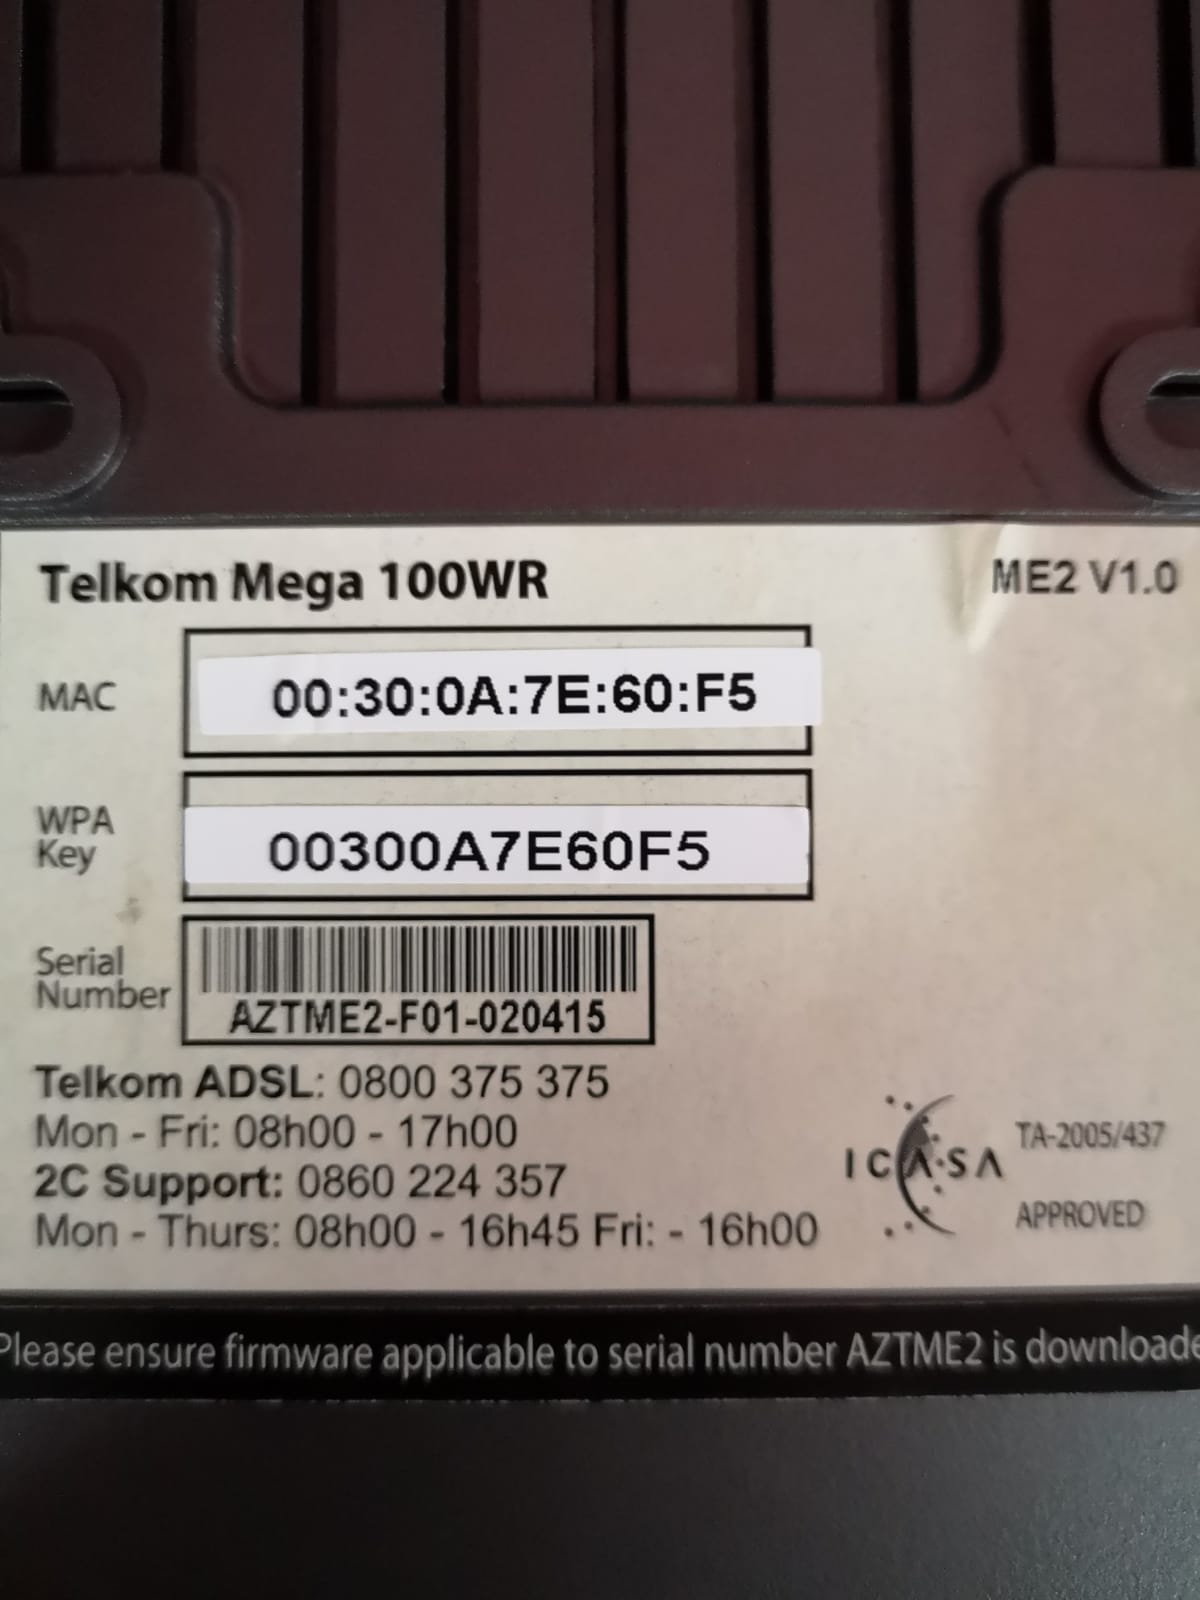 Telkom Mega 100W Router